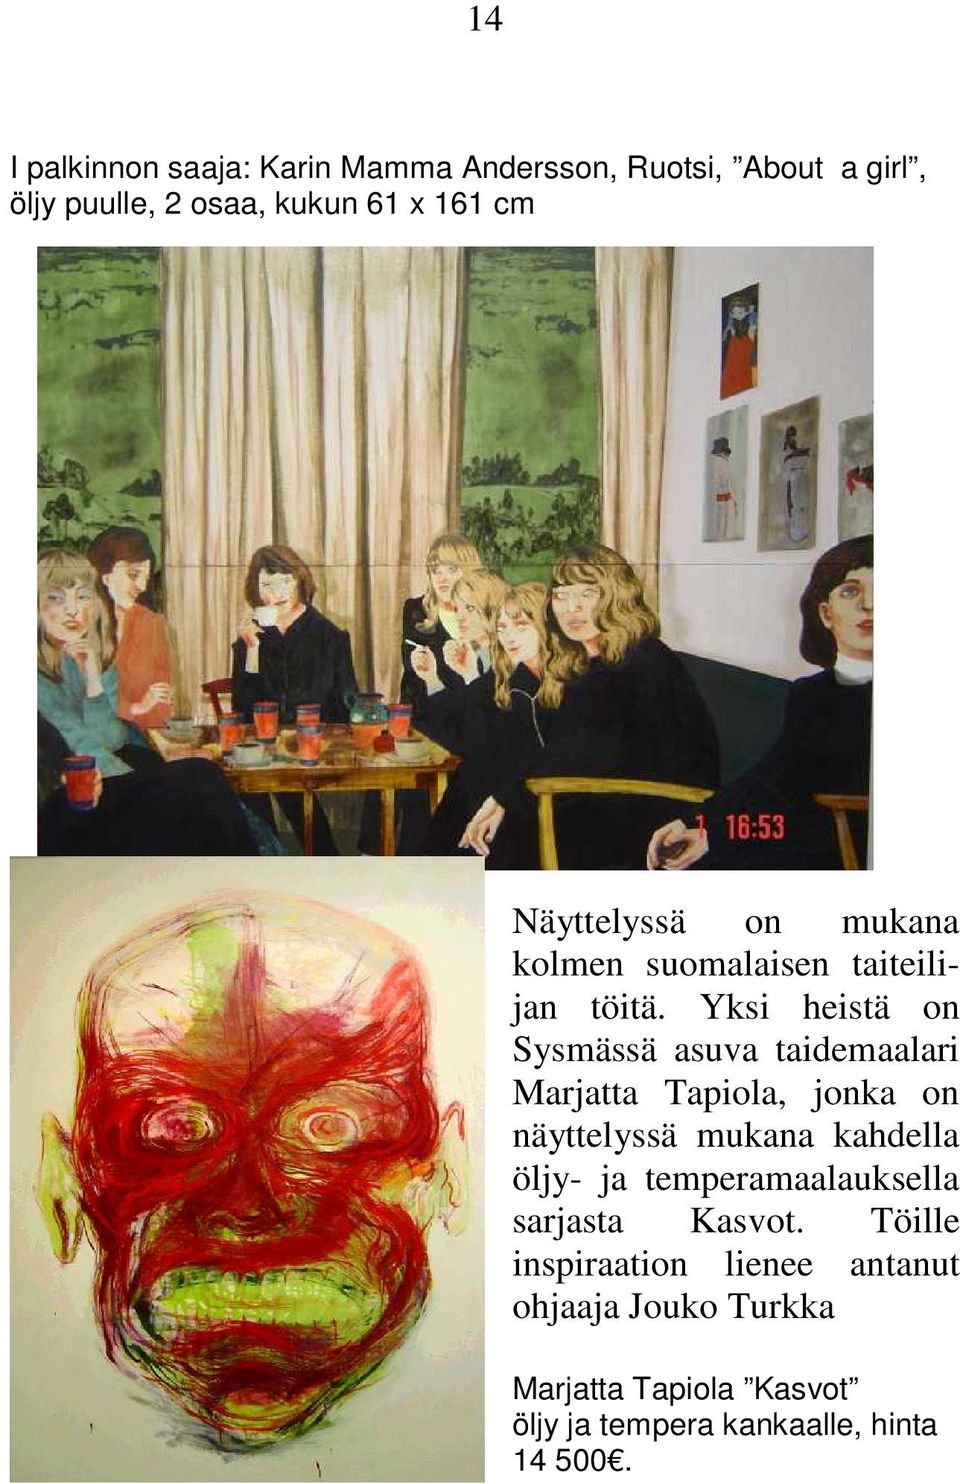 Yksi heistä on Sysmässä asuva taidemaalari Marjatta Tapiola, jonka on näyttelyssä mukana kahdella öljy- ja